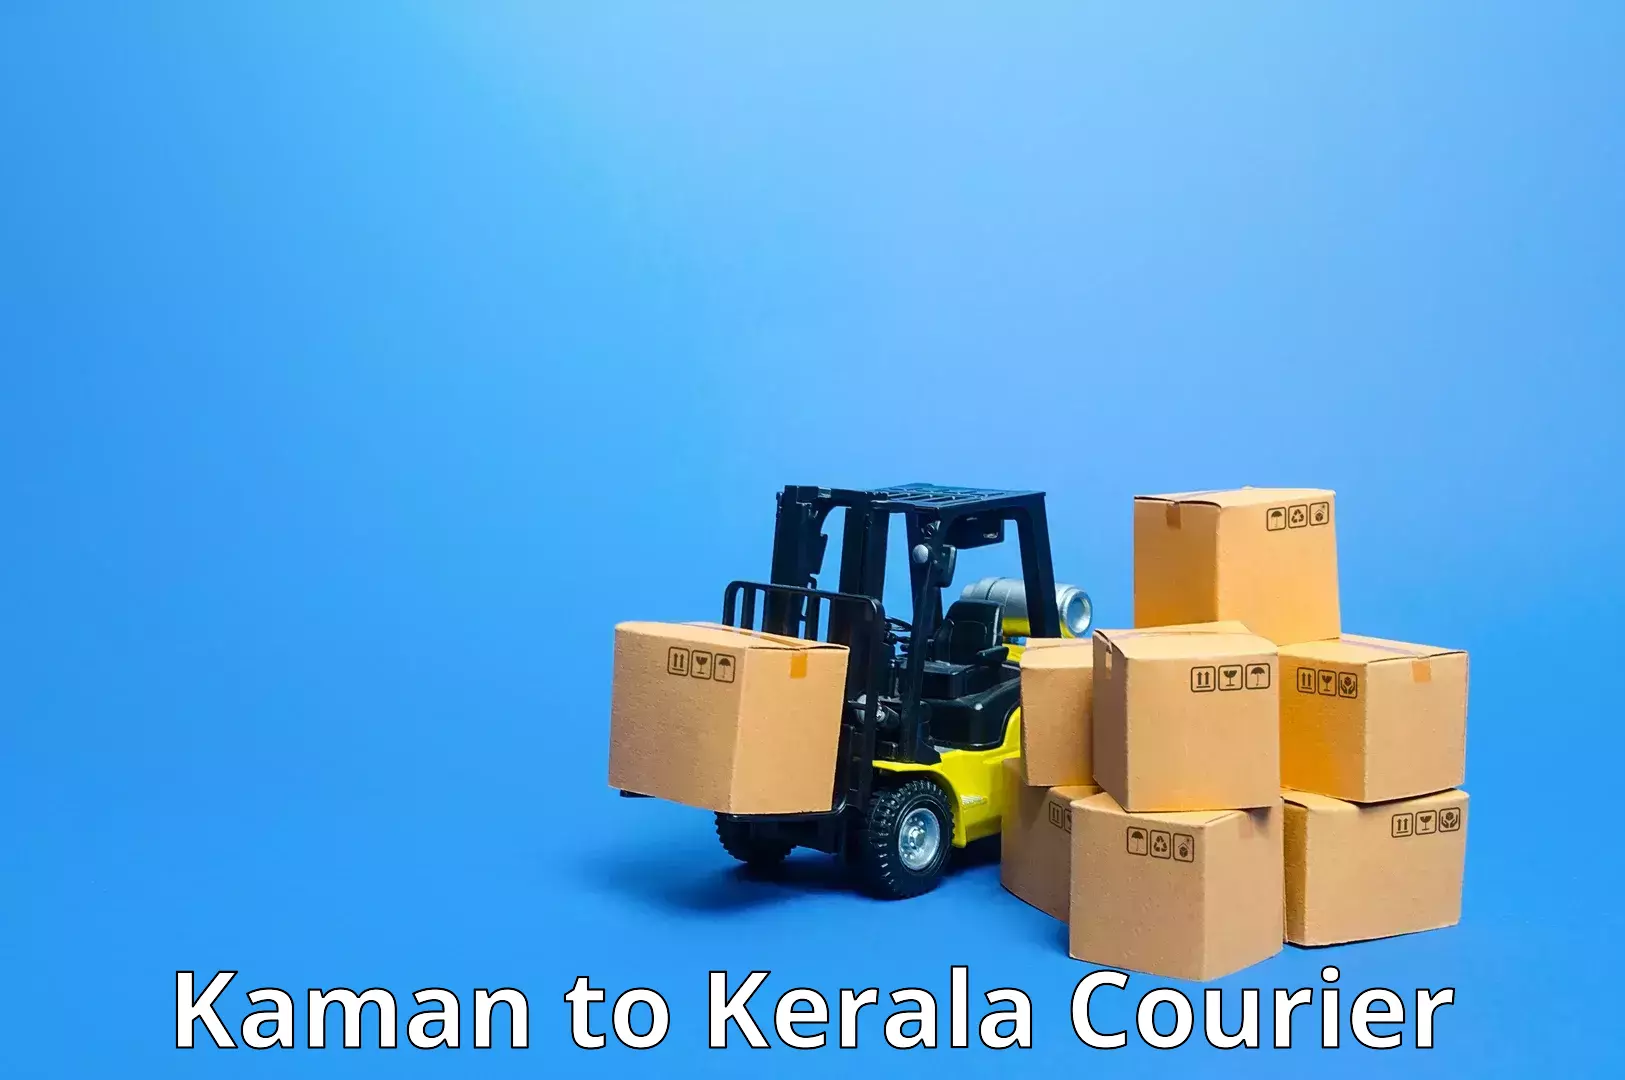 Express delivery capabilities Kaman to Koothattukulam